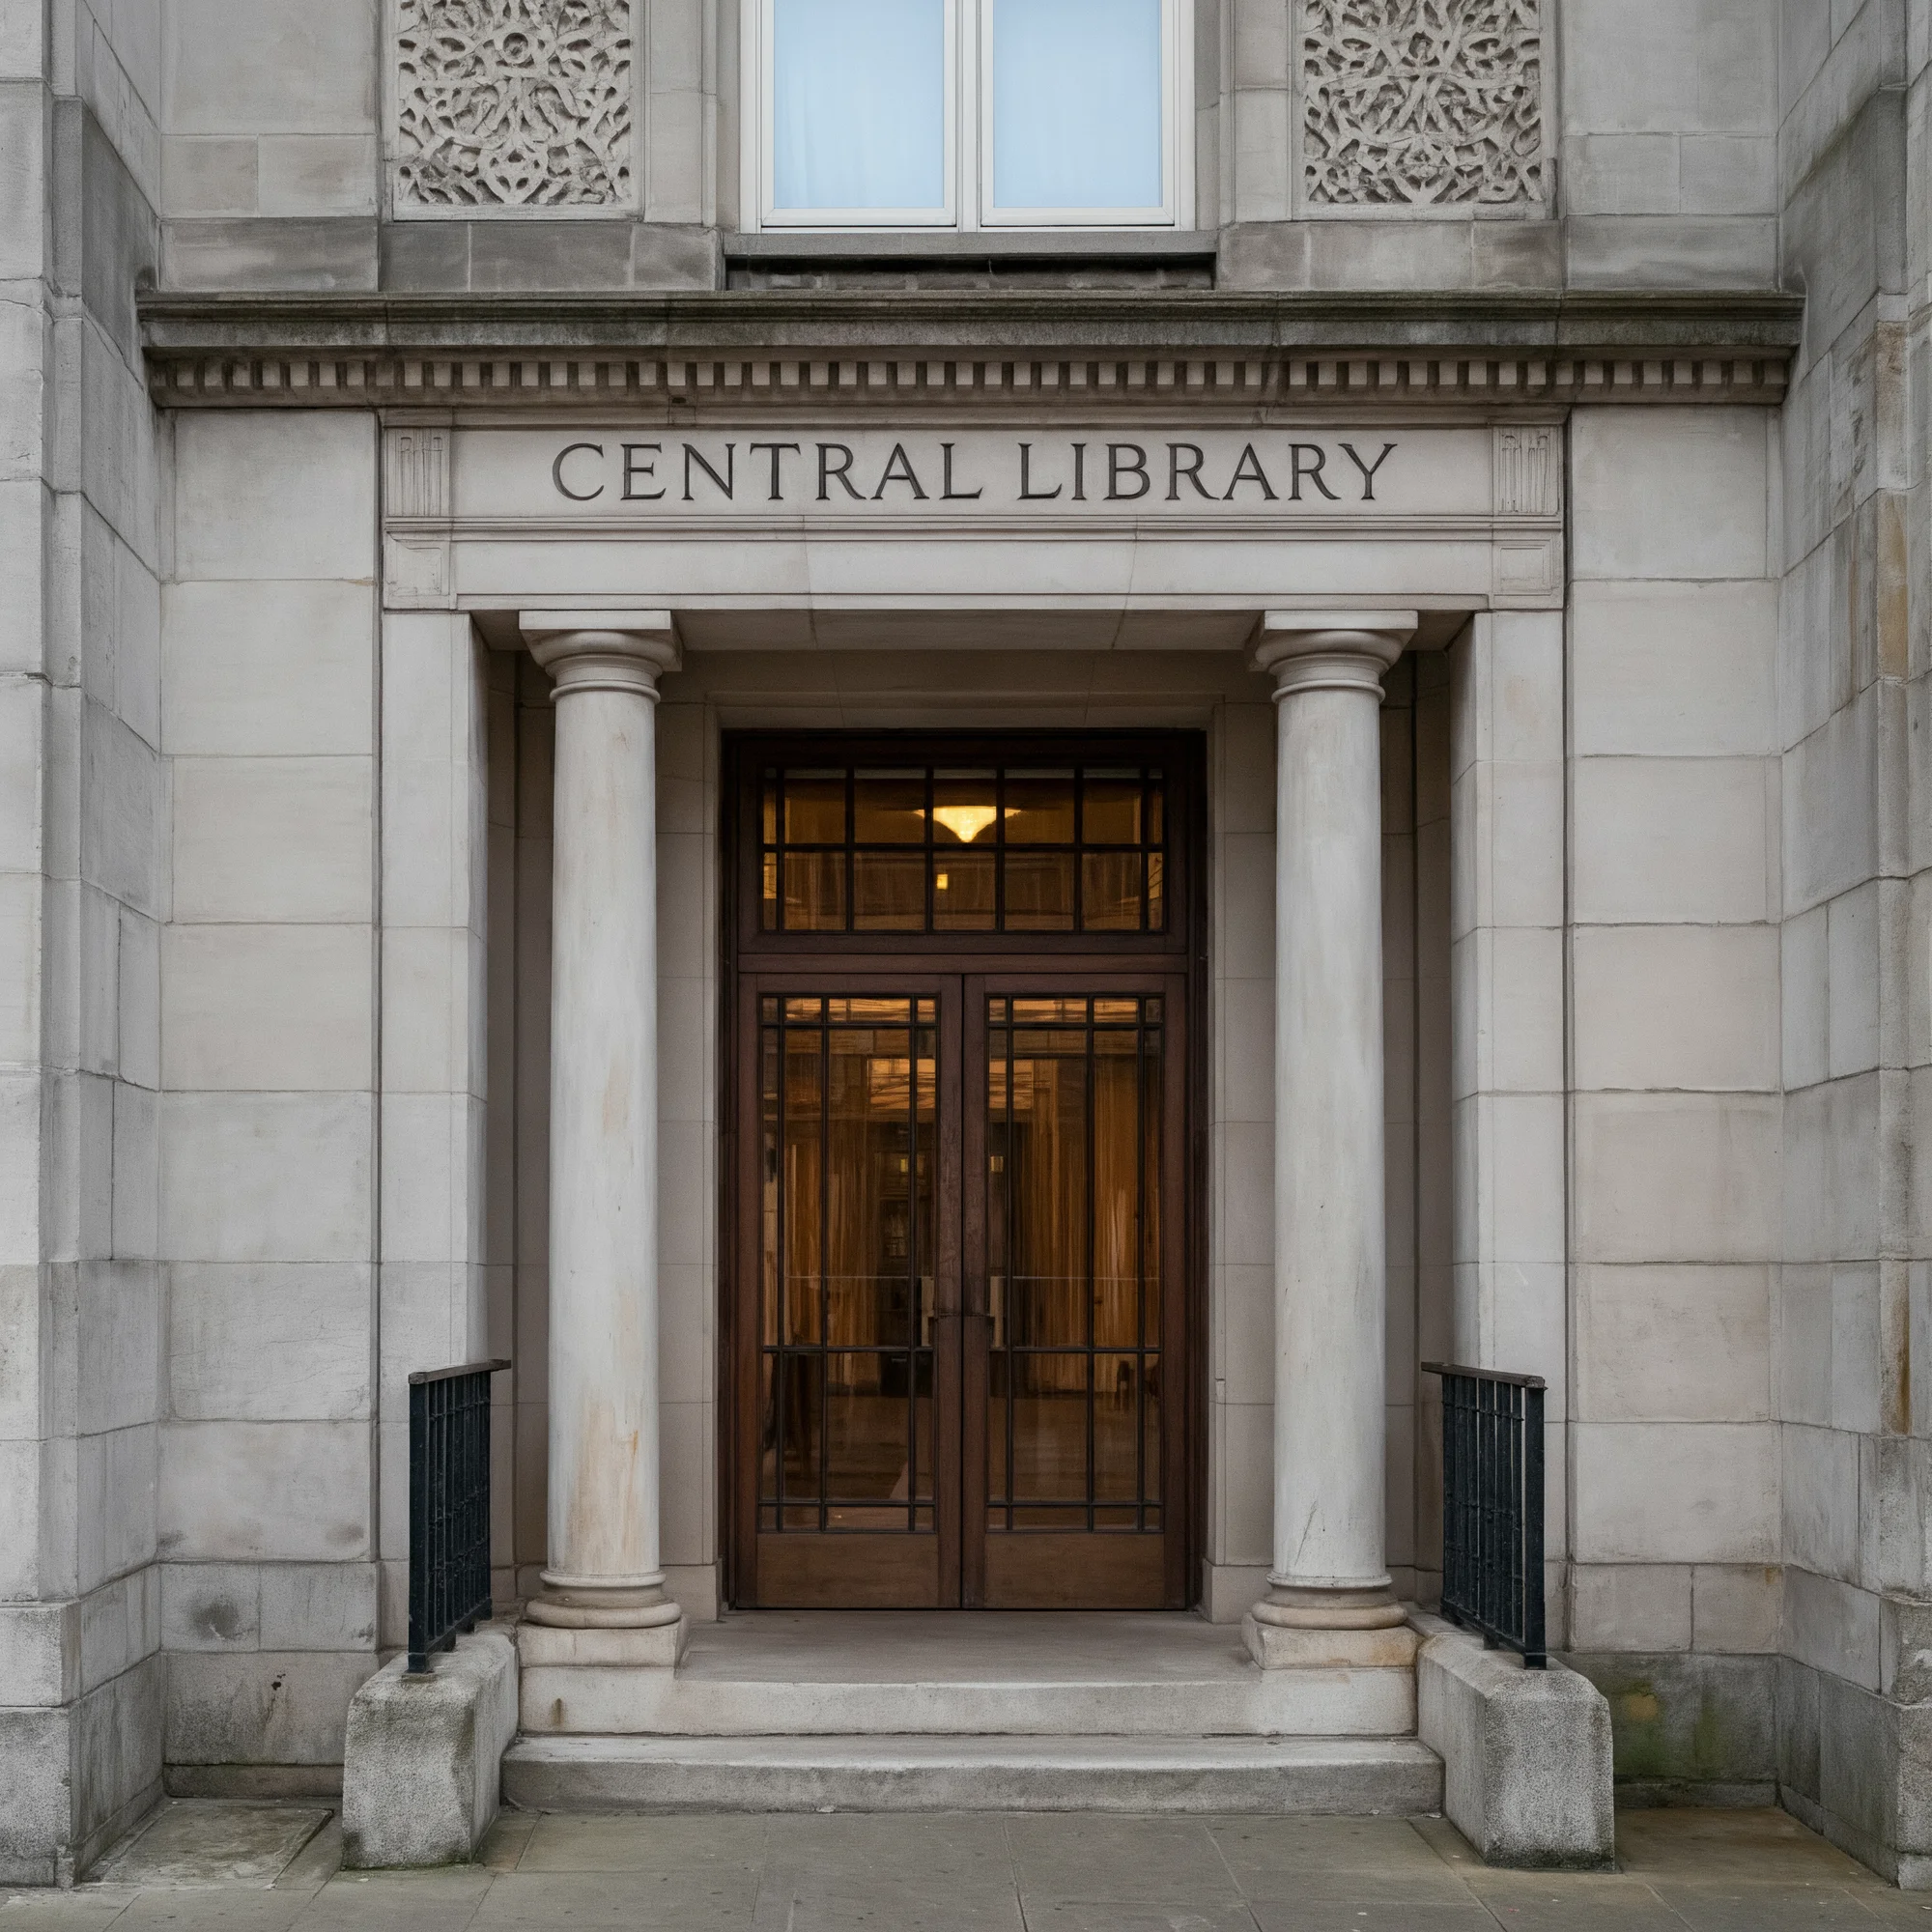 一座宏伟的石制建筑入口，上方刻有“中央图书馆”字样。入口由两根柱子框架，设有一组带玻璃窗的大木门。